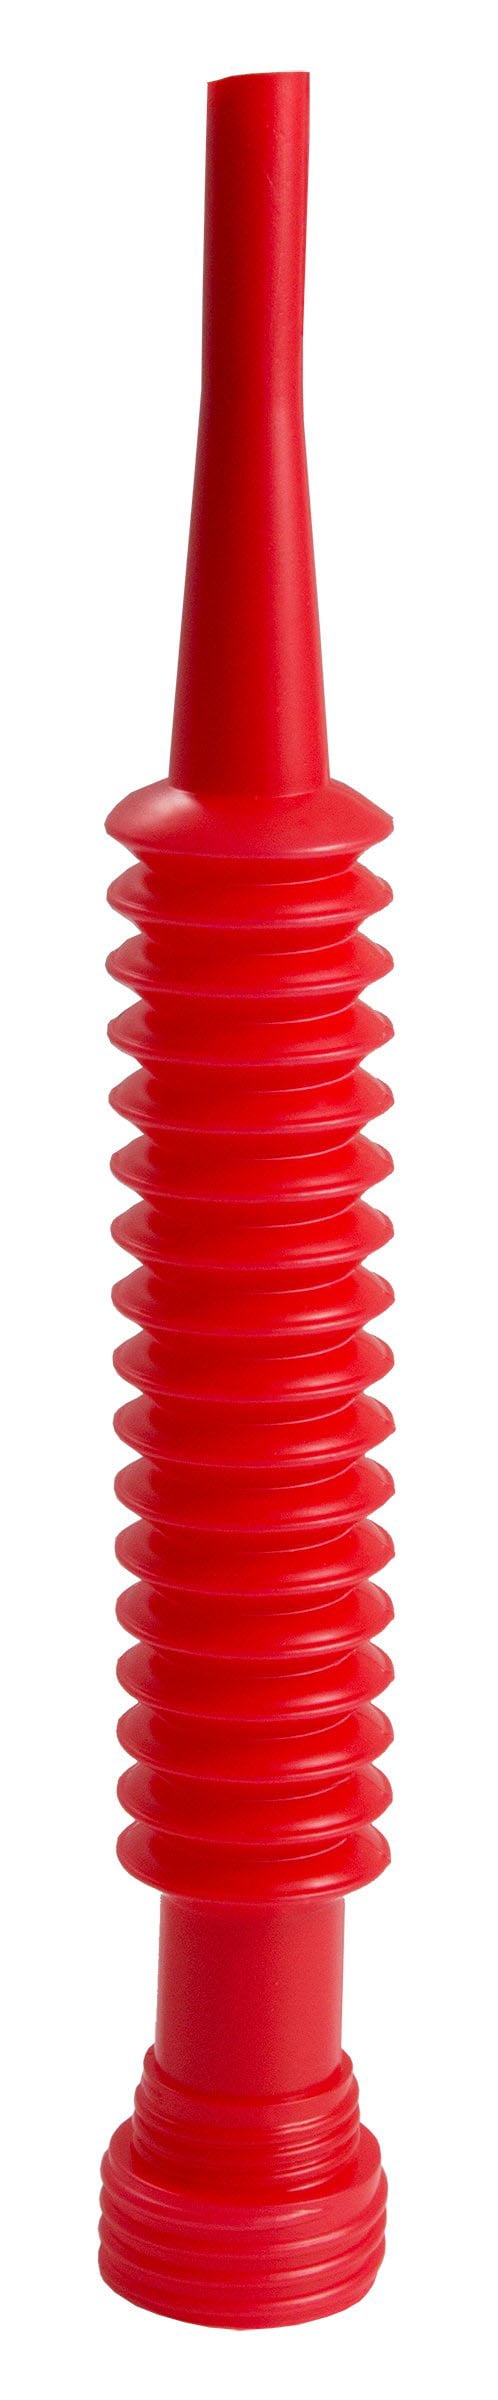 Hyper Tough Super-Flexi Plastic Funnel Spout, 10119